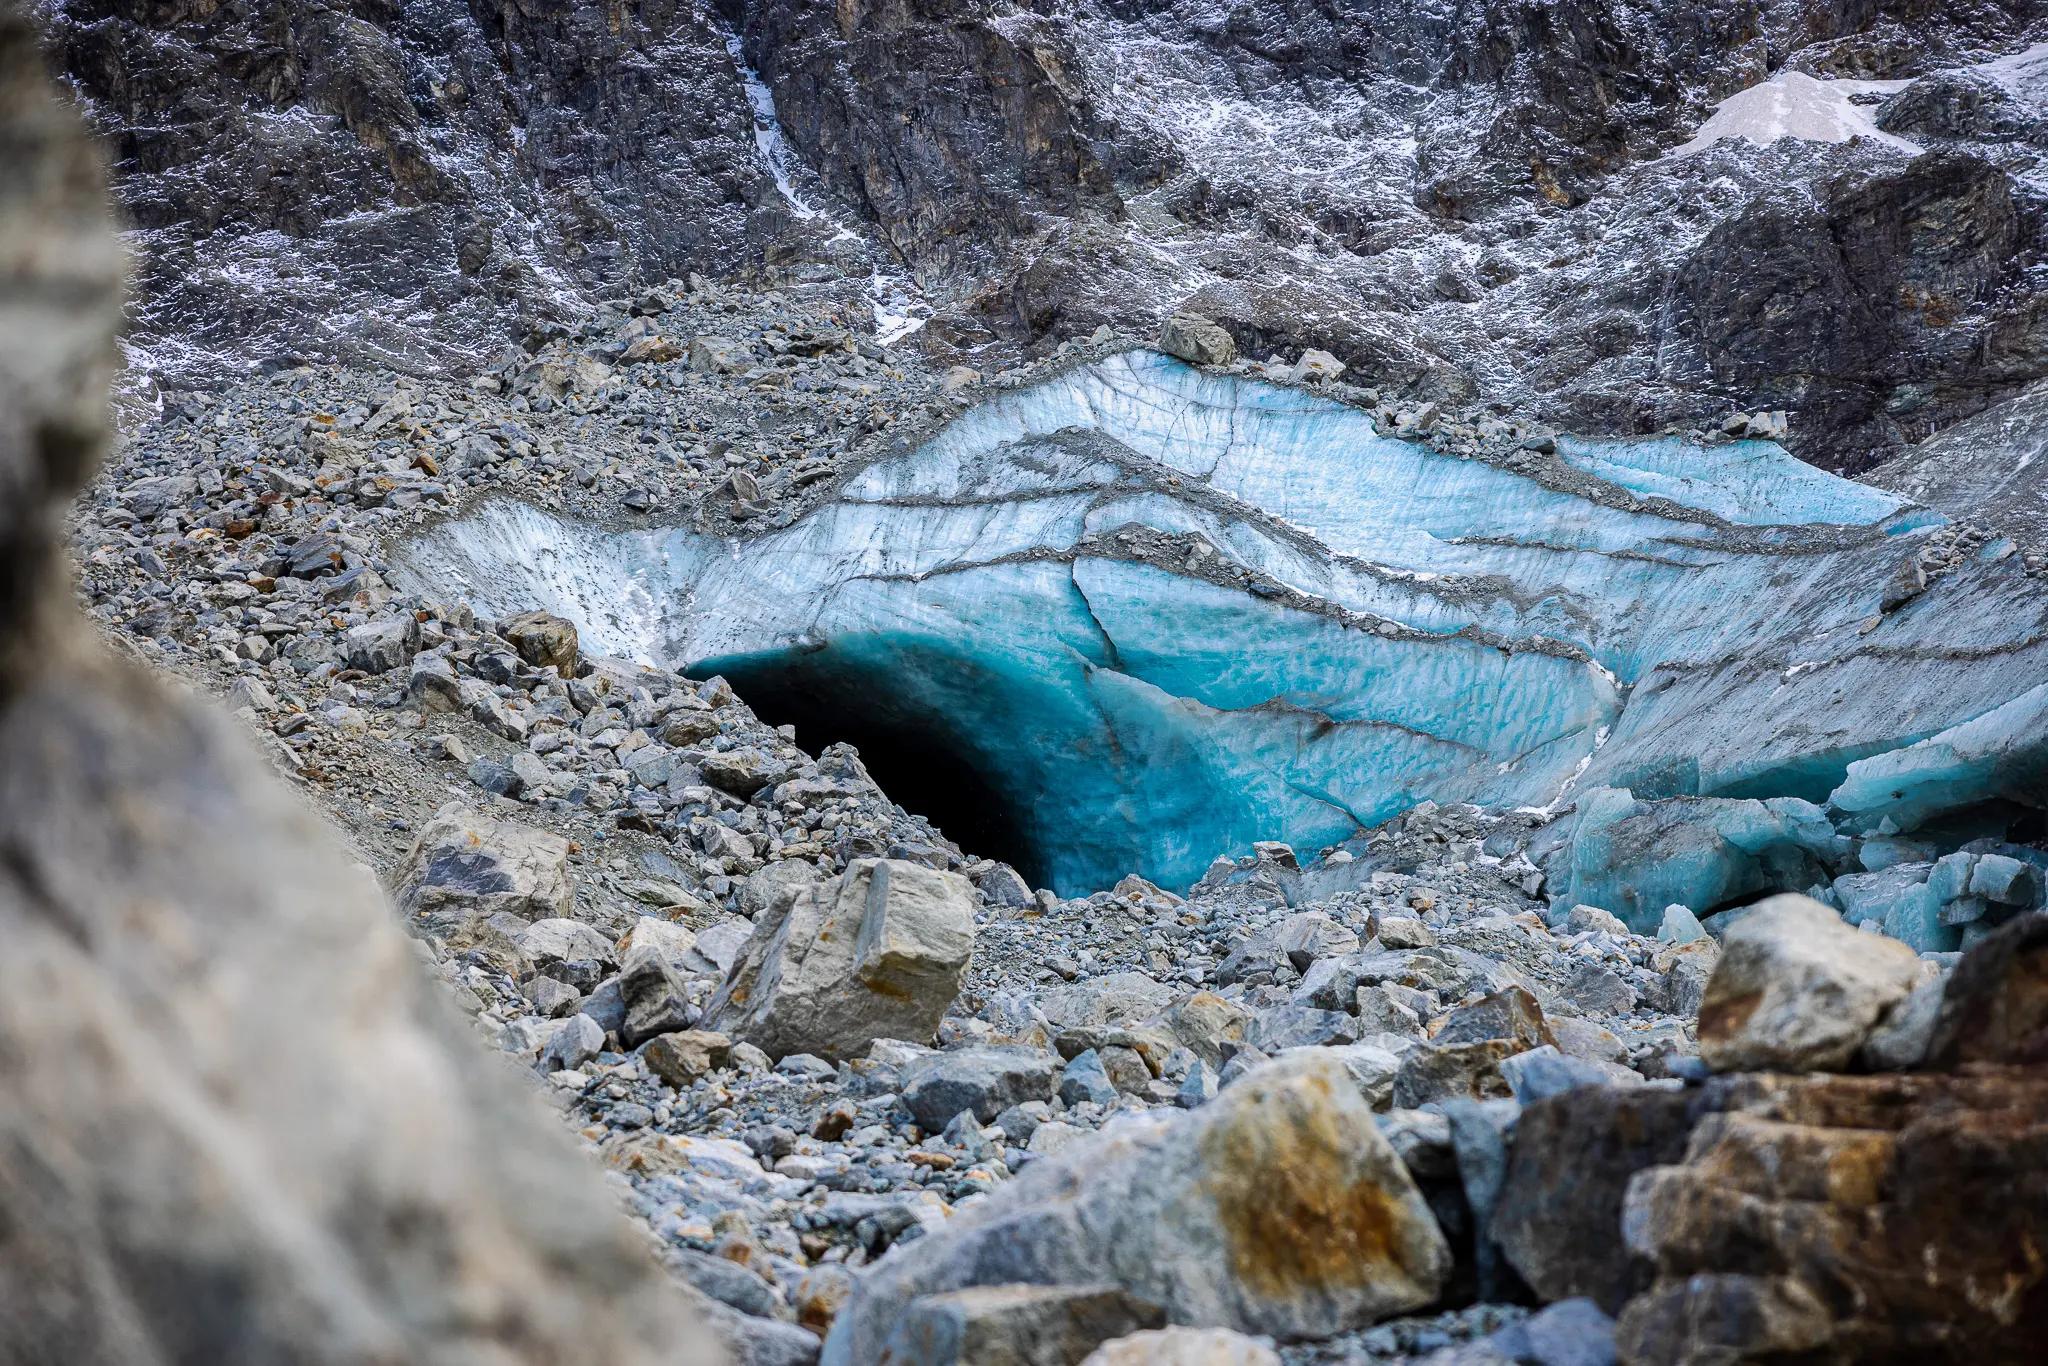 Der Eingang zur Eishöhle, die an der Kante herumliegenden, tonnenschweren Steine drohen unvermittelt abzurutschen